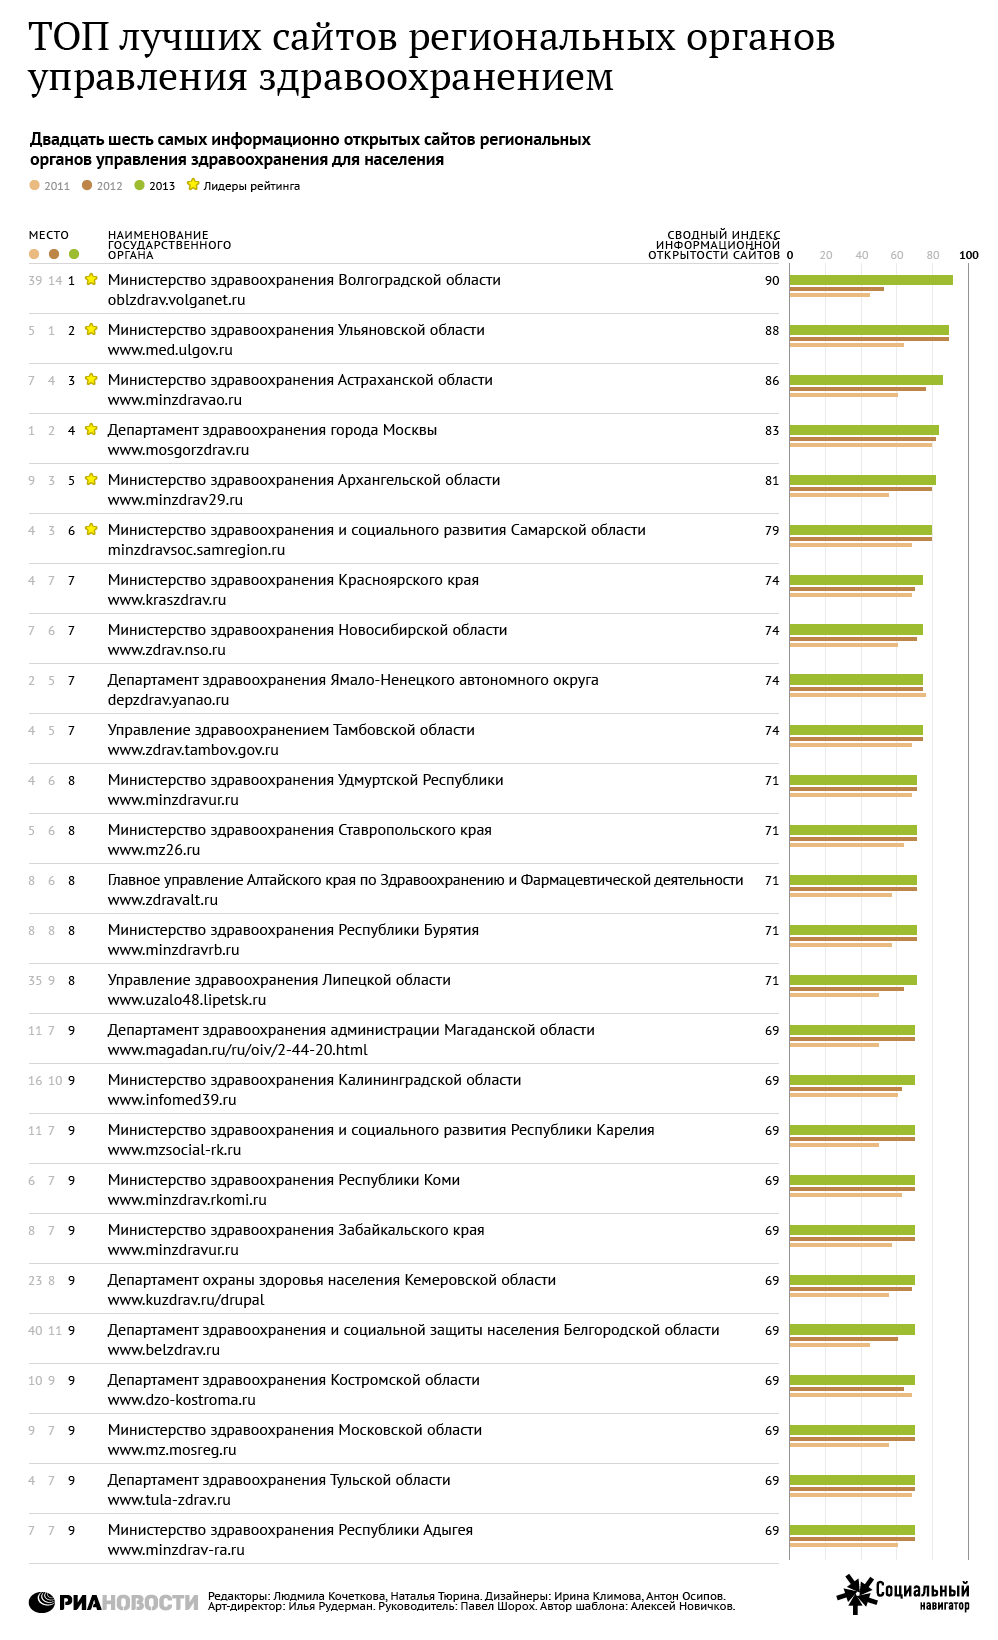 Рейтинг сайтов региональных органов управления здравоохранением - 2013